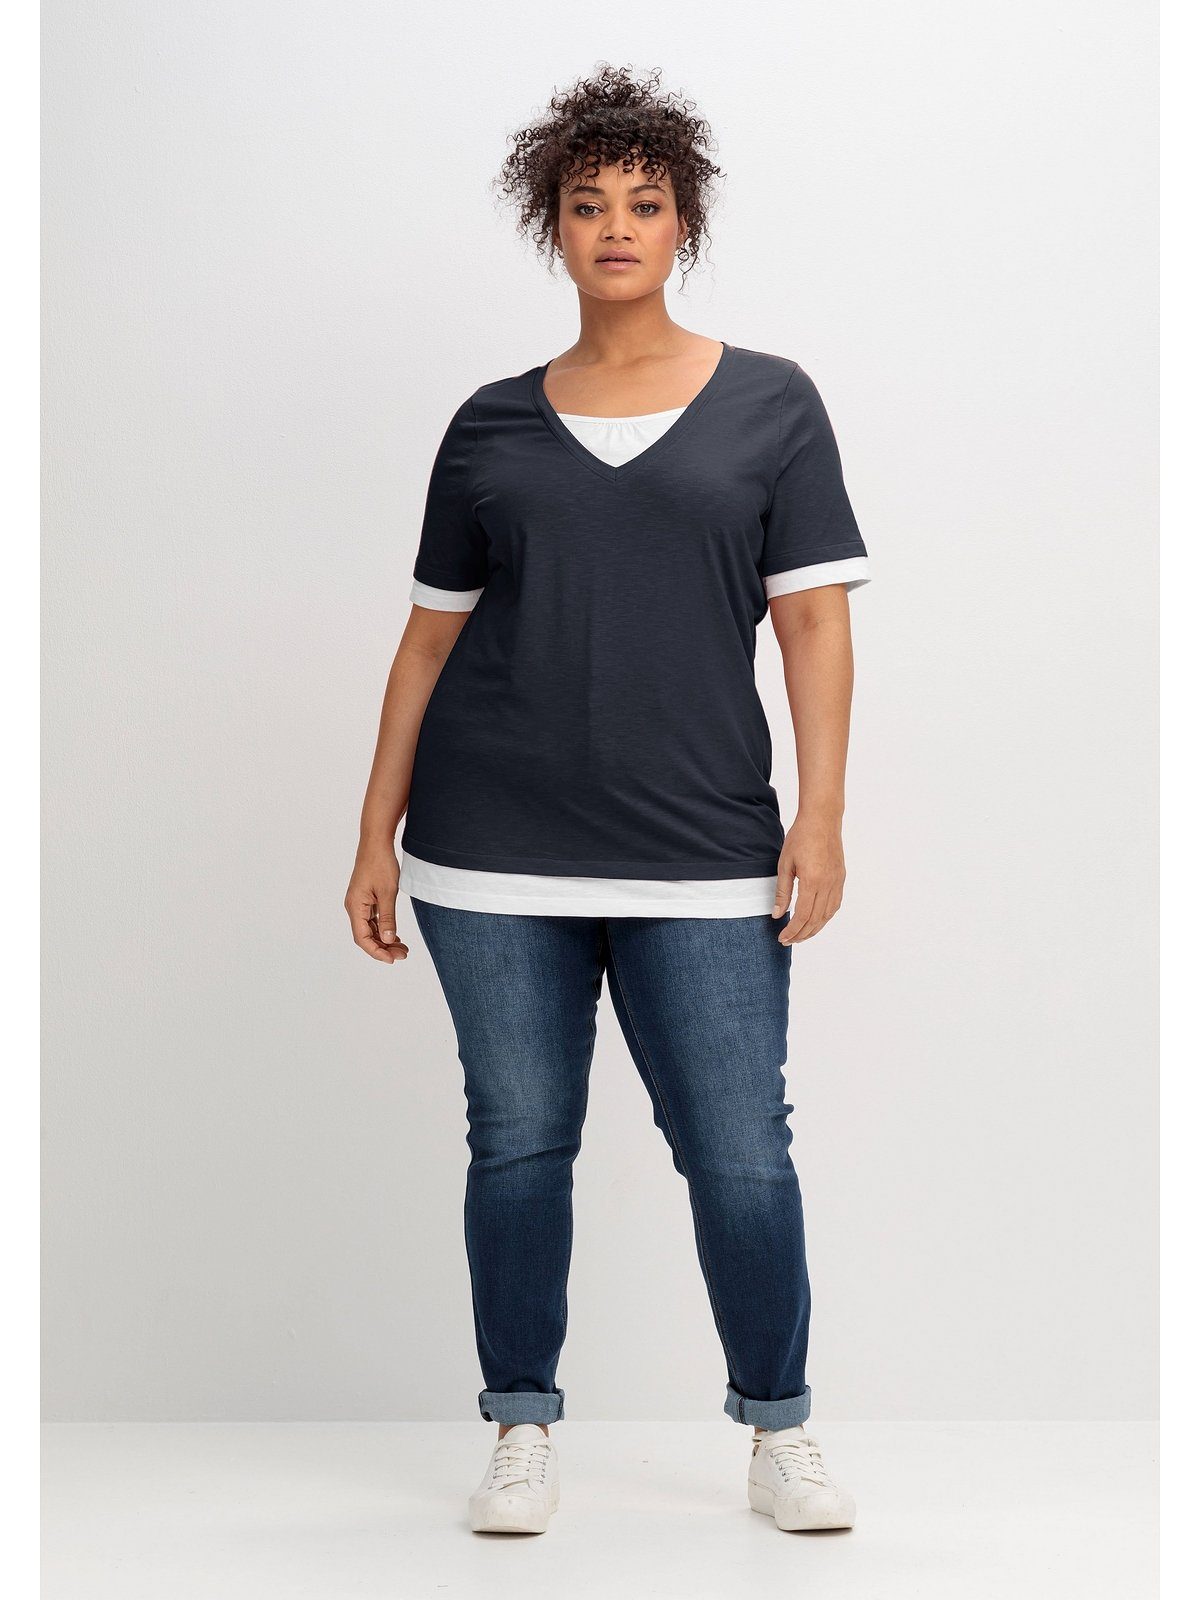 2-in-1-Optik, Große 2-in-1-Shirt Sheego V-Ausschnitt tiefblau-weiß in Größen mit